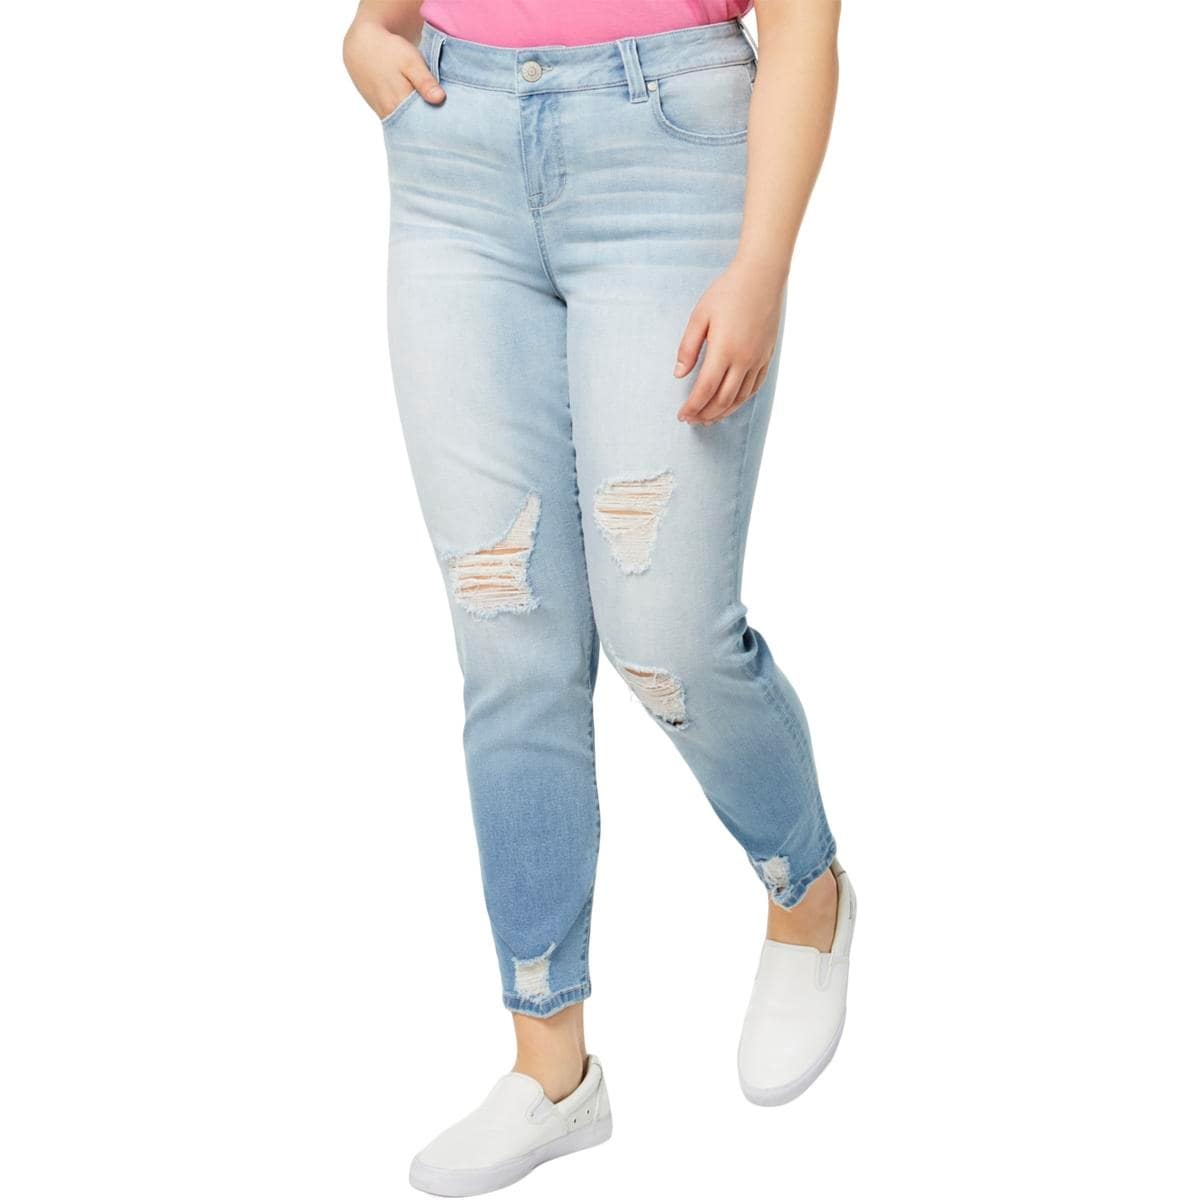 celebrity pink girlfriend jeans